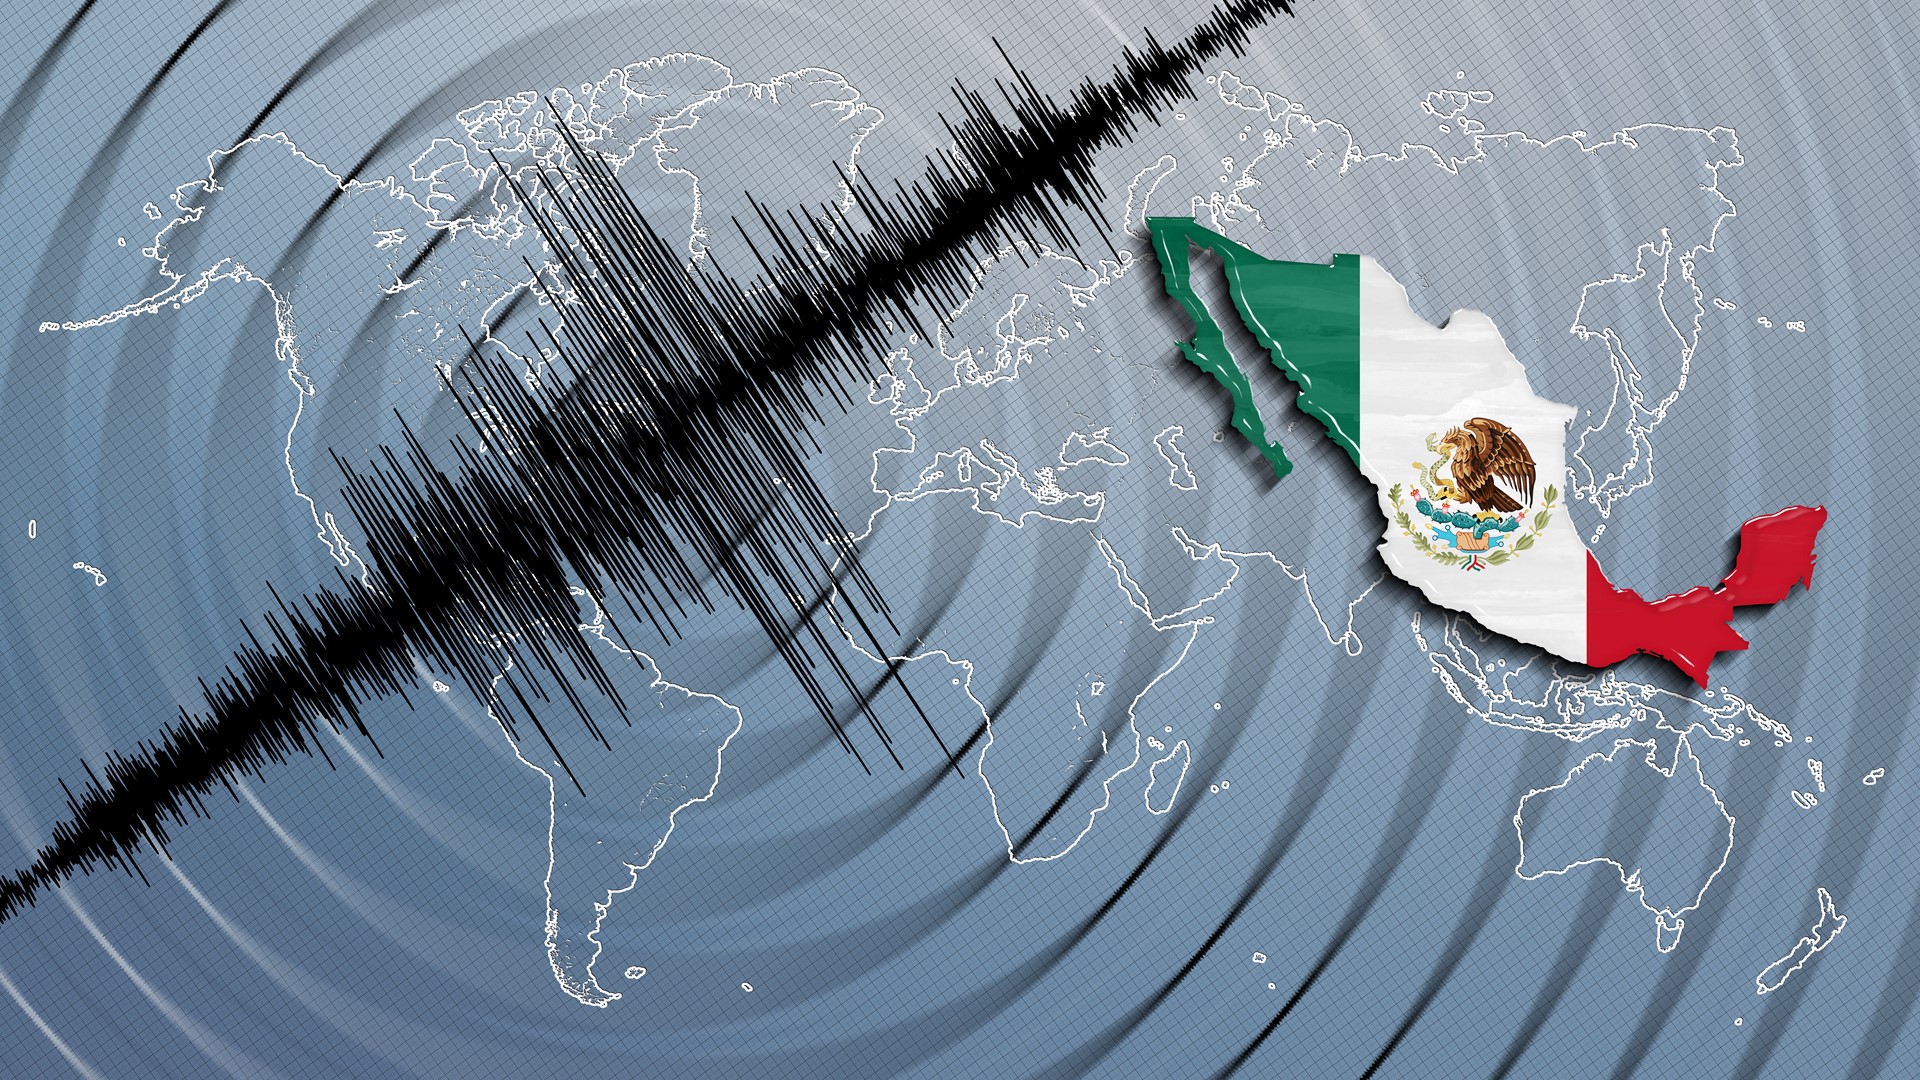 El 19 de septiembre de 1985 México fue sacudido por un devastador terremoto. En el 2017, otro sismo azotó al país azteca y la historia se repite en el 2022.